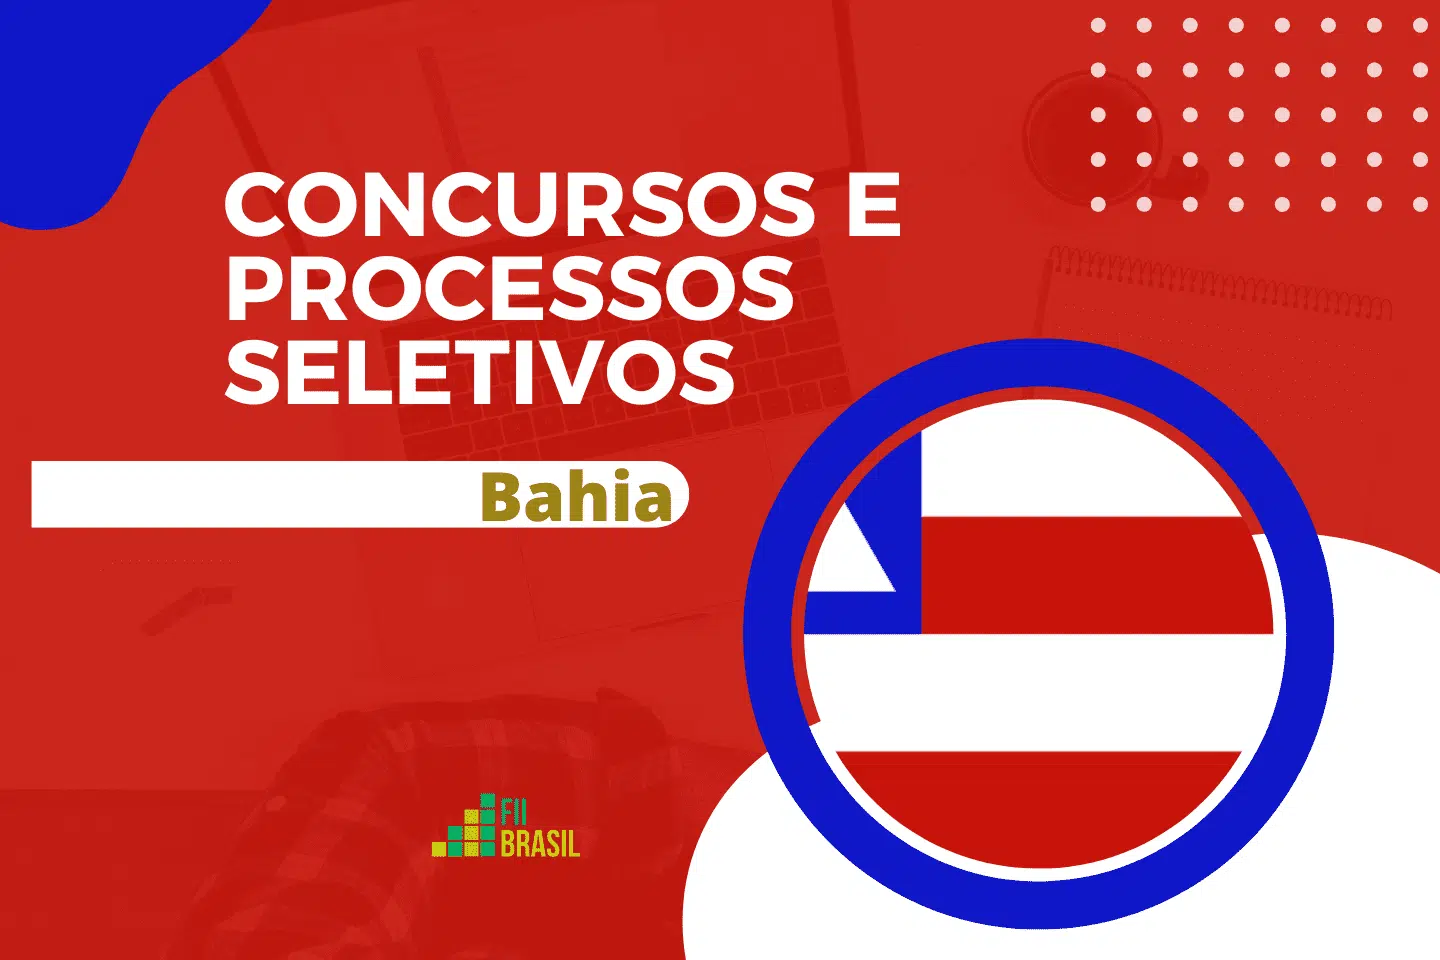 UESB - BA Bahia Concurso Público